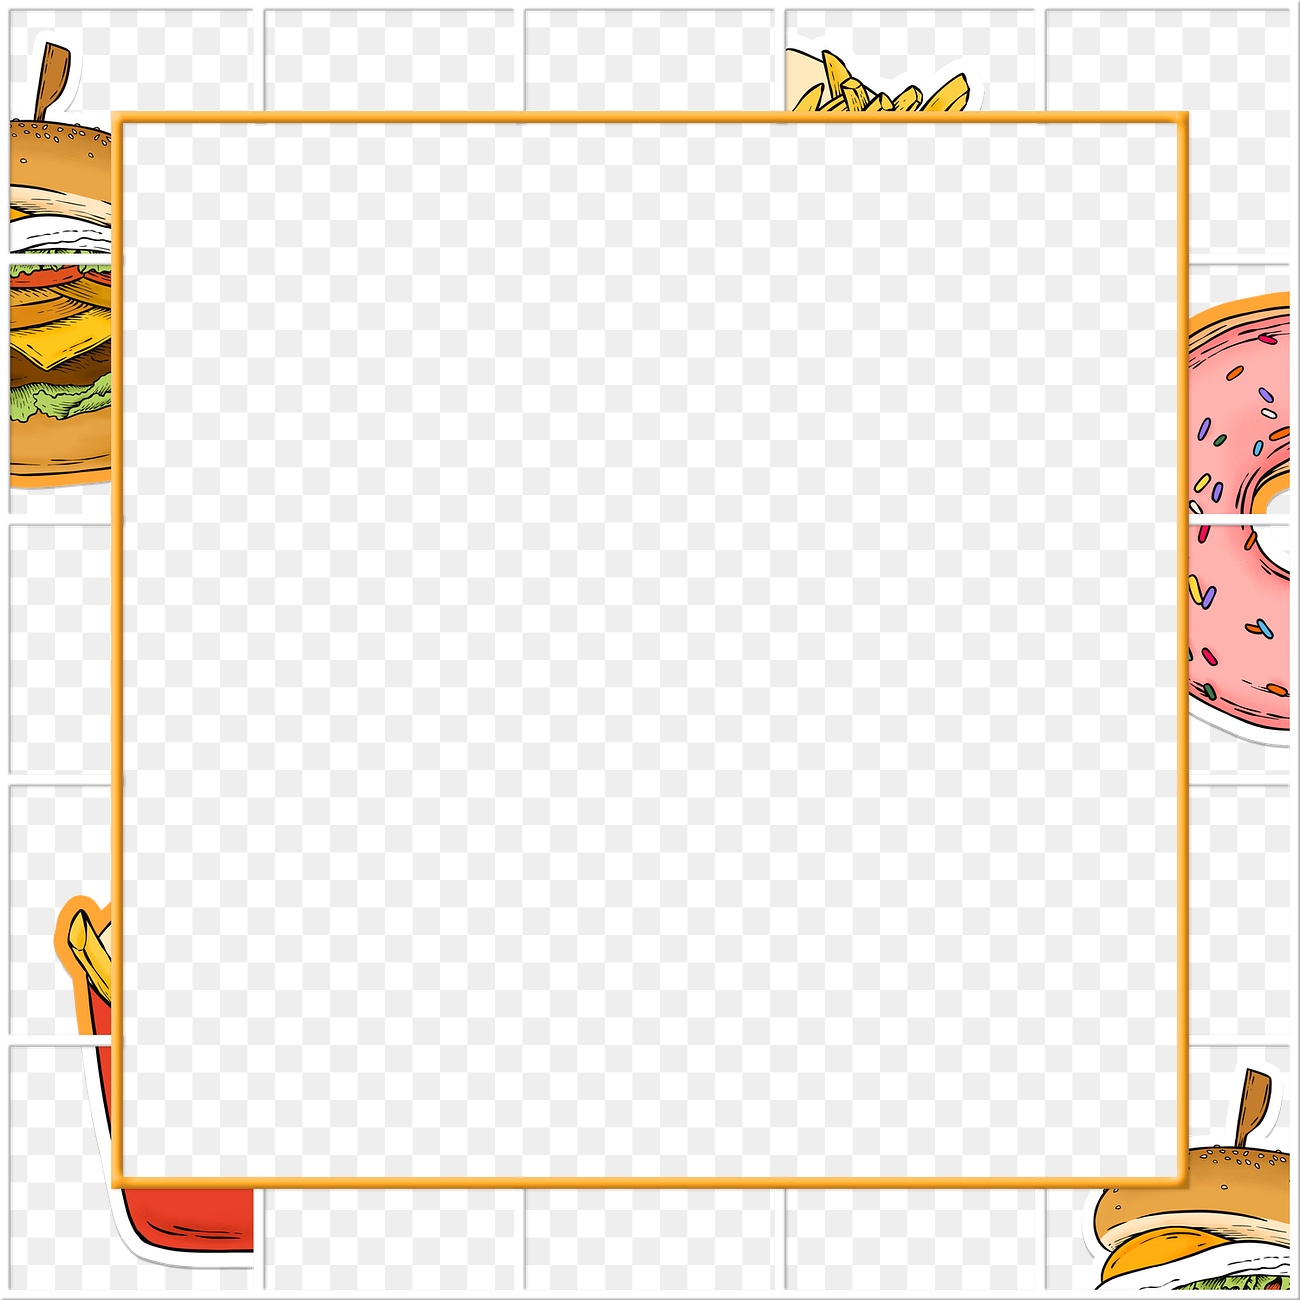 Square fast food frame design | Premium PNG - rawpixel